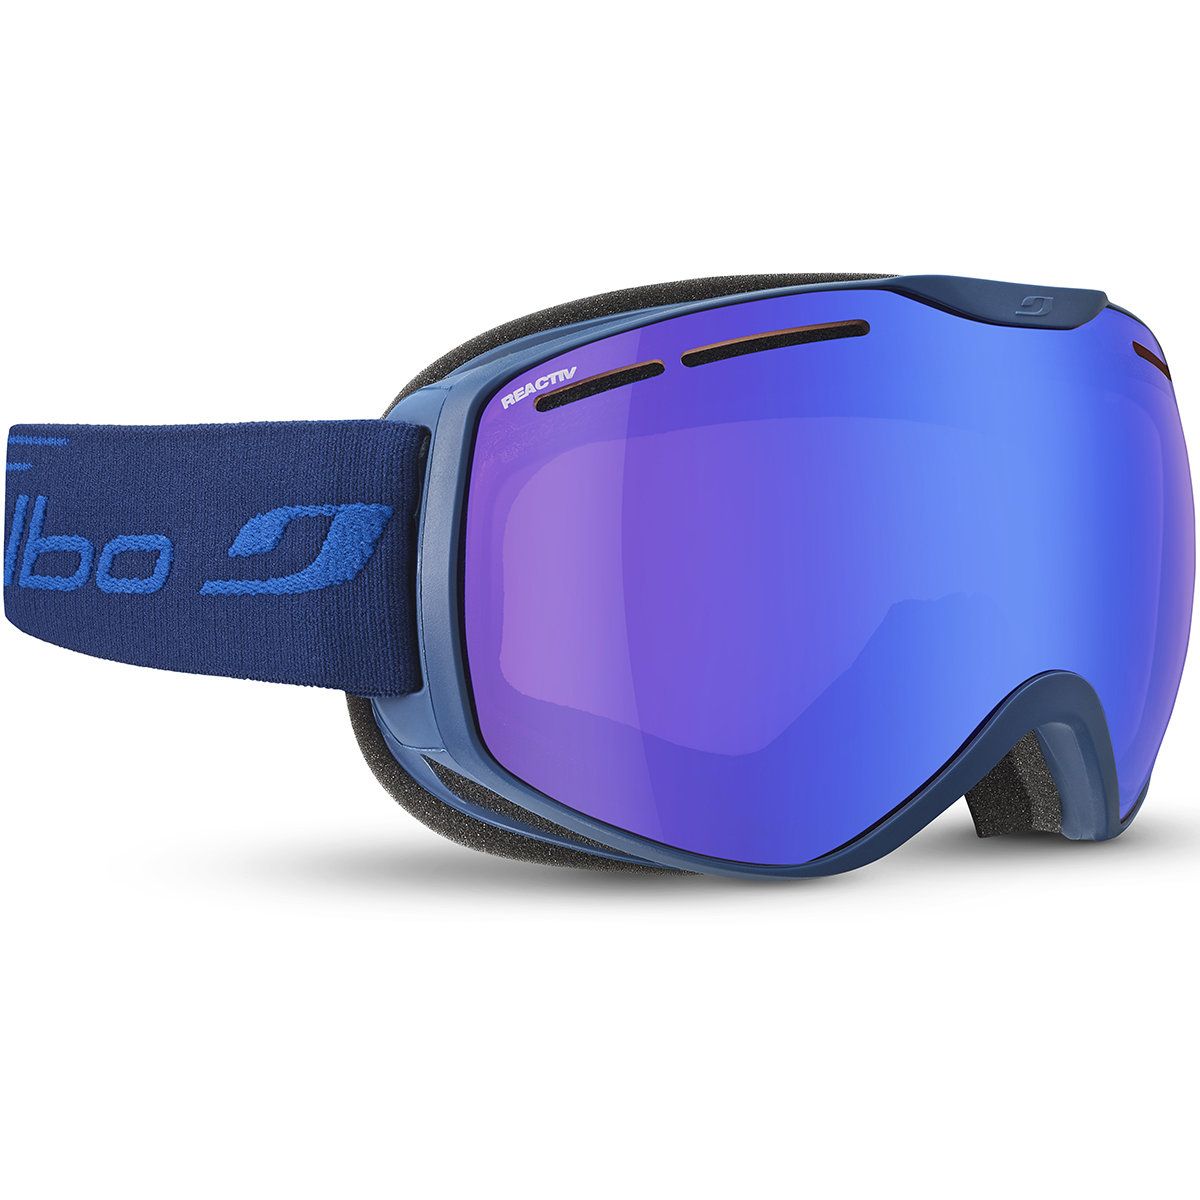 Masque de Ski Fusion - Bleu - Reactiv Performance 1-3